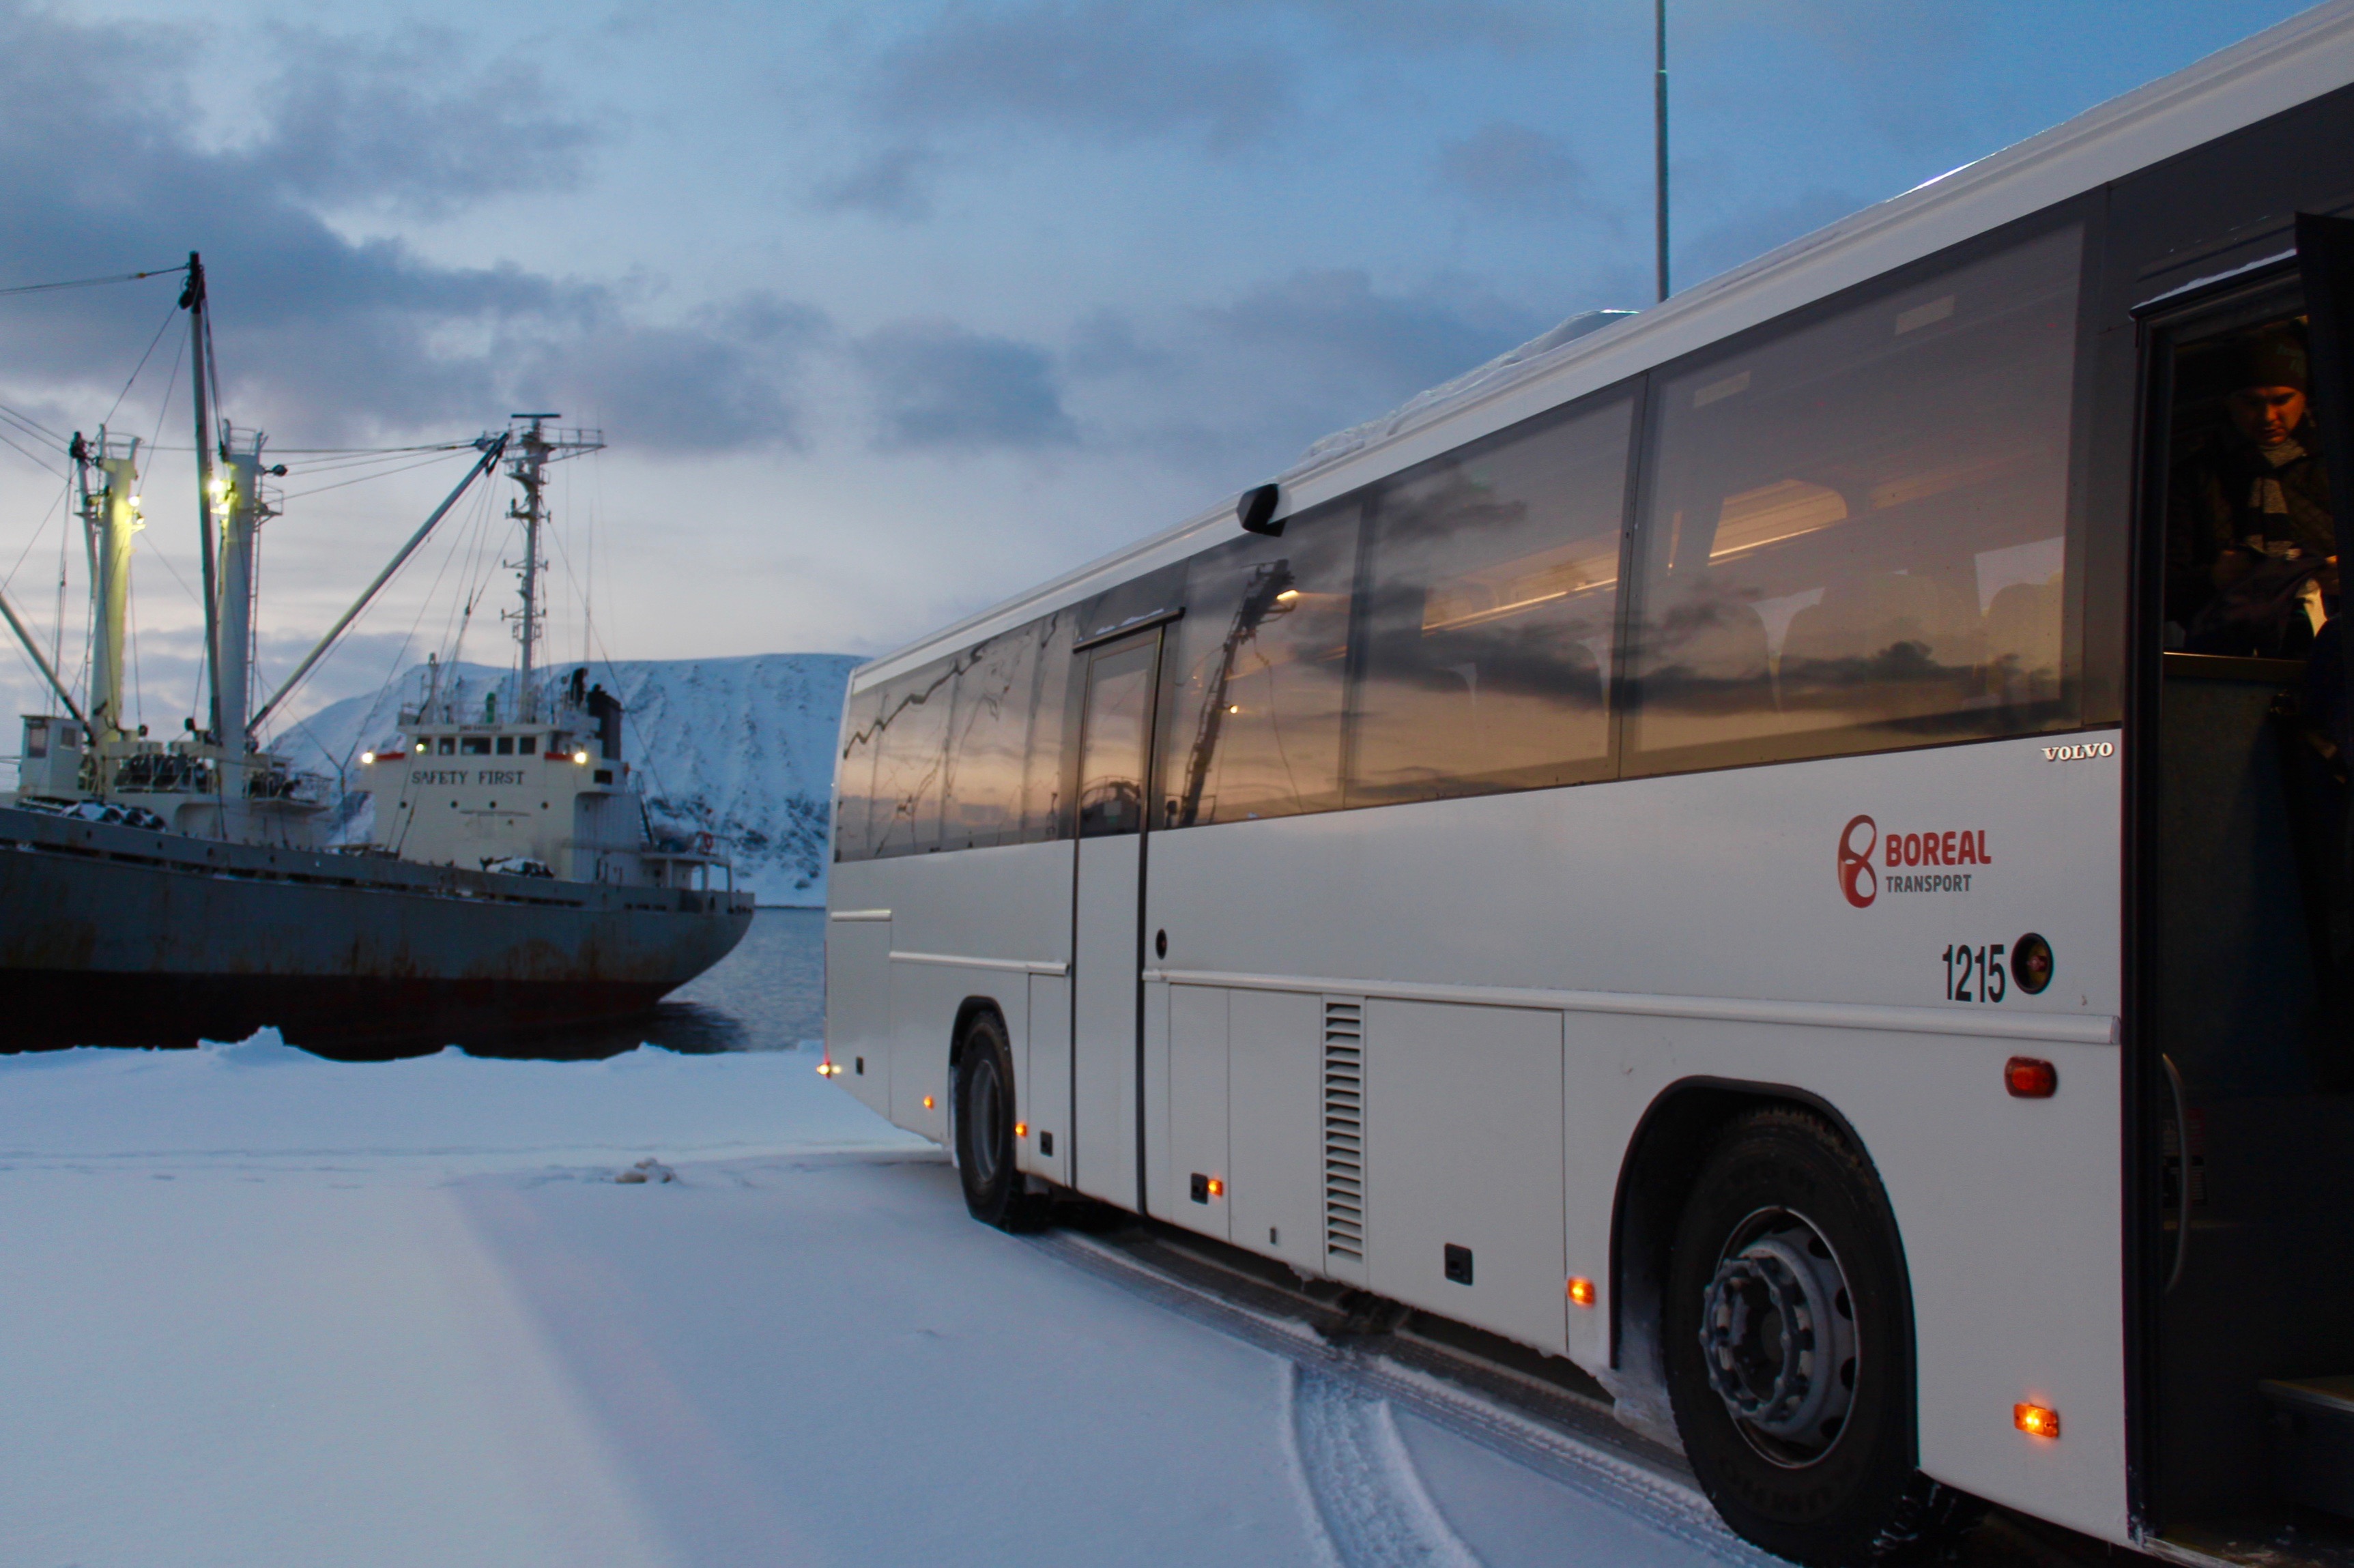 Das Nordkap befindet sich etwa 30km nördlich von Honningsvåg am anderen Ende der Insel. Das letzte Etappenstück zum Globus legt man mit Bussen zurück.